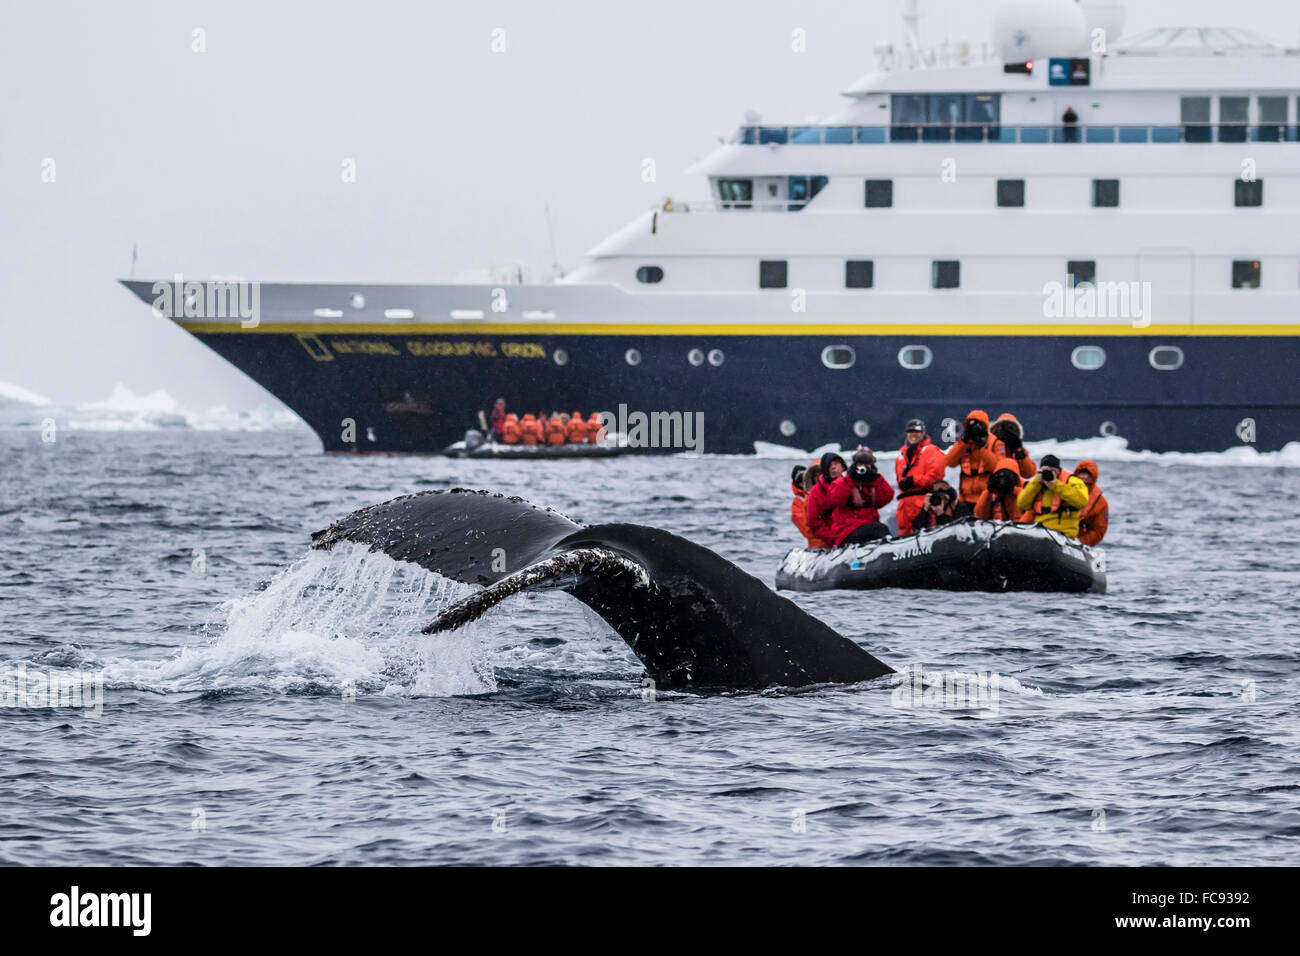 Baleine à bosse au cours de plongée de la croisière Zodiac Lindblad Expeditions navire Orion National Geographic, mer de Weddell, l'Antarctique Banque D'Images